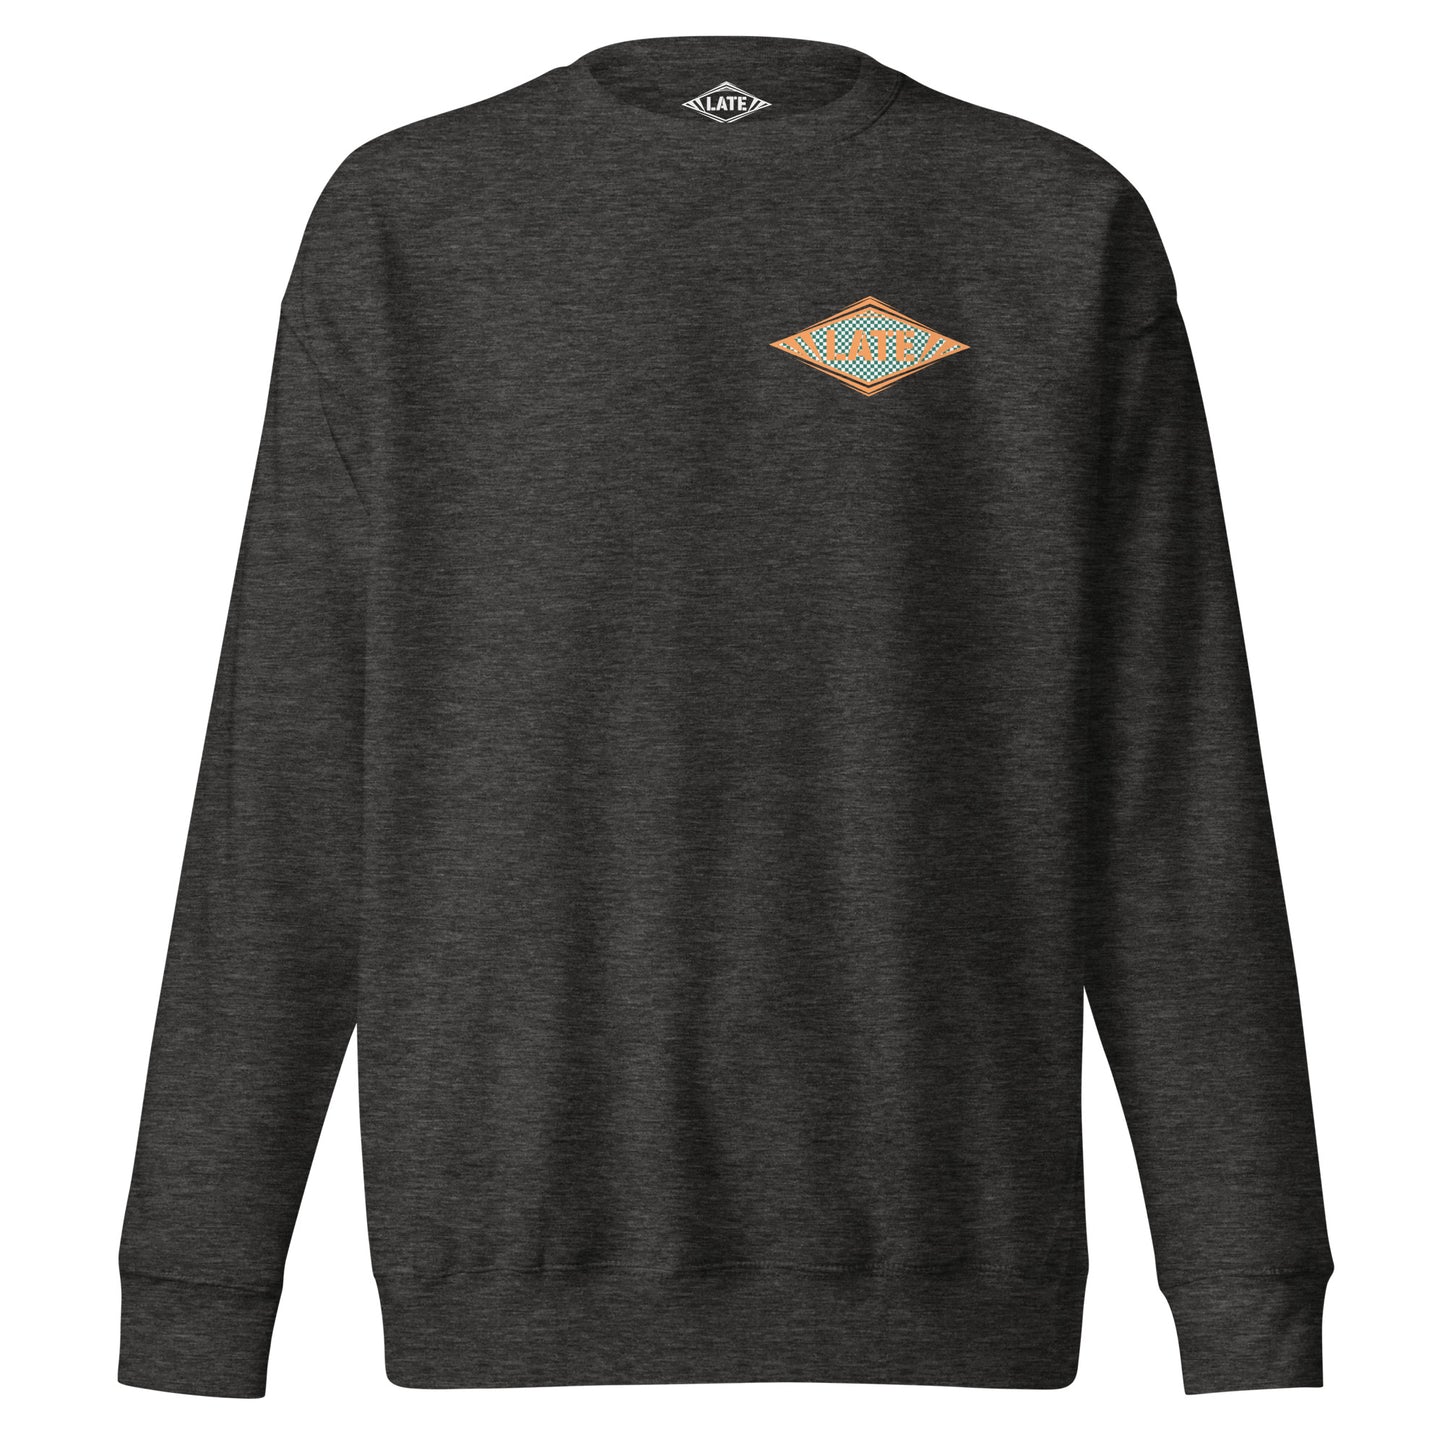 Sweatshirt Shred It logo Late à carreaux style Vans skateboarding sweat-shirt unisex couleur gris foncé